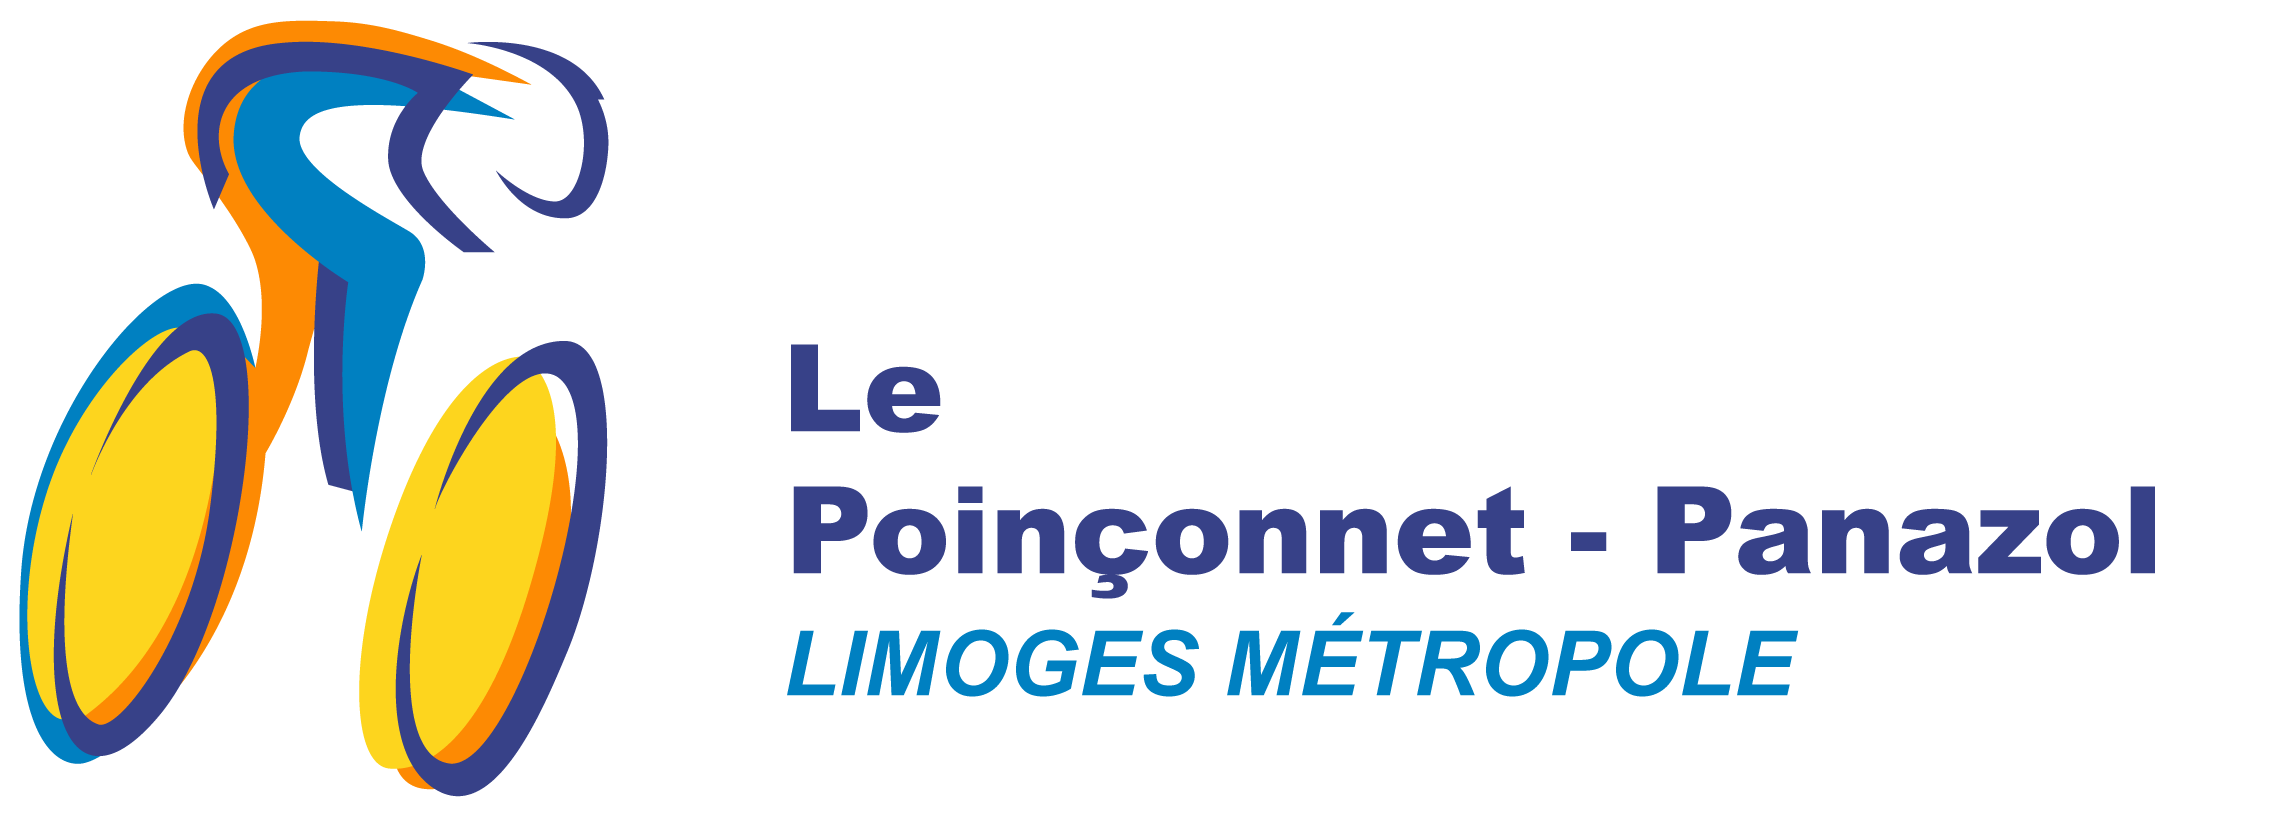 Logo Poinconnet Panazol